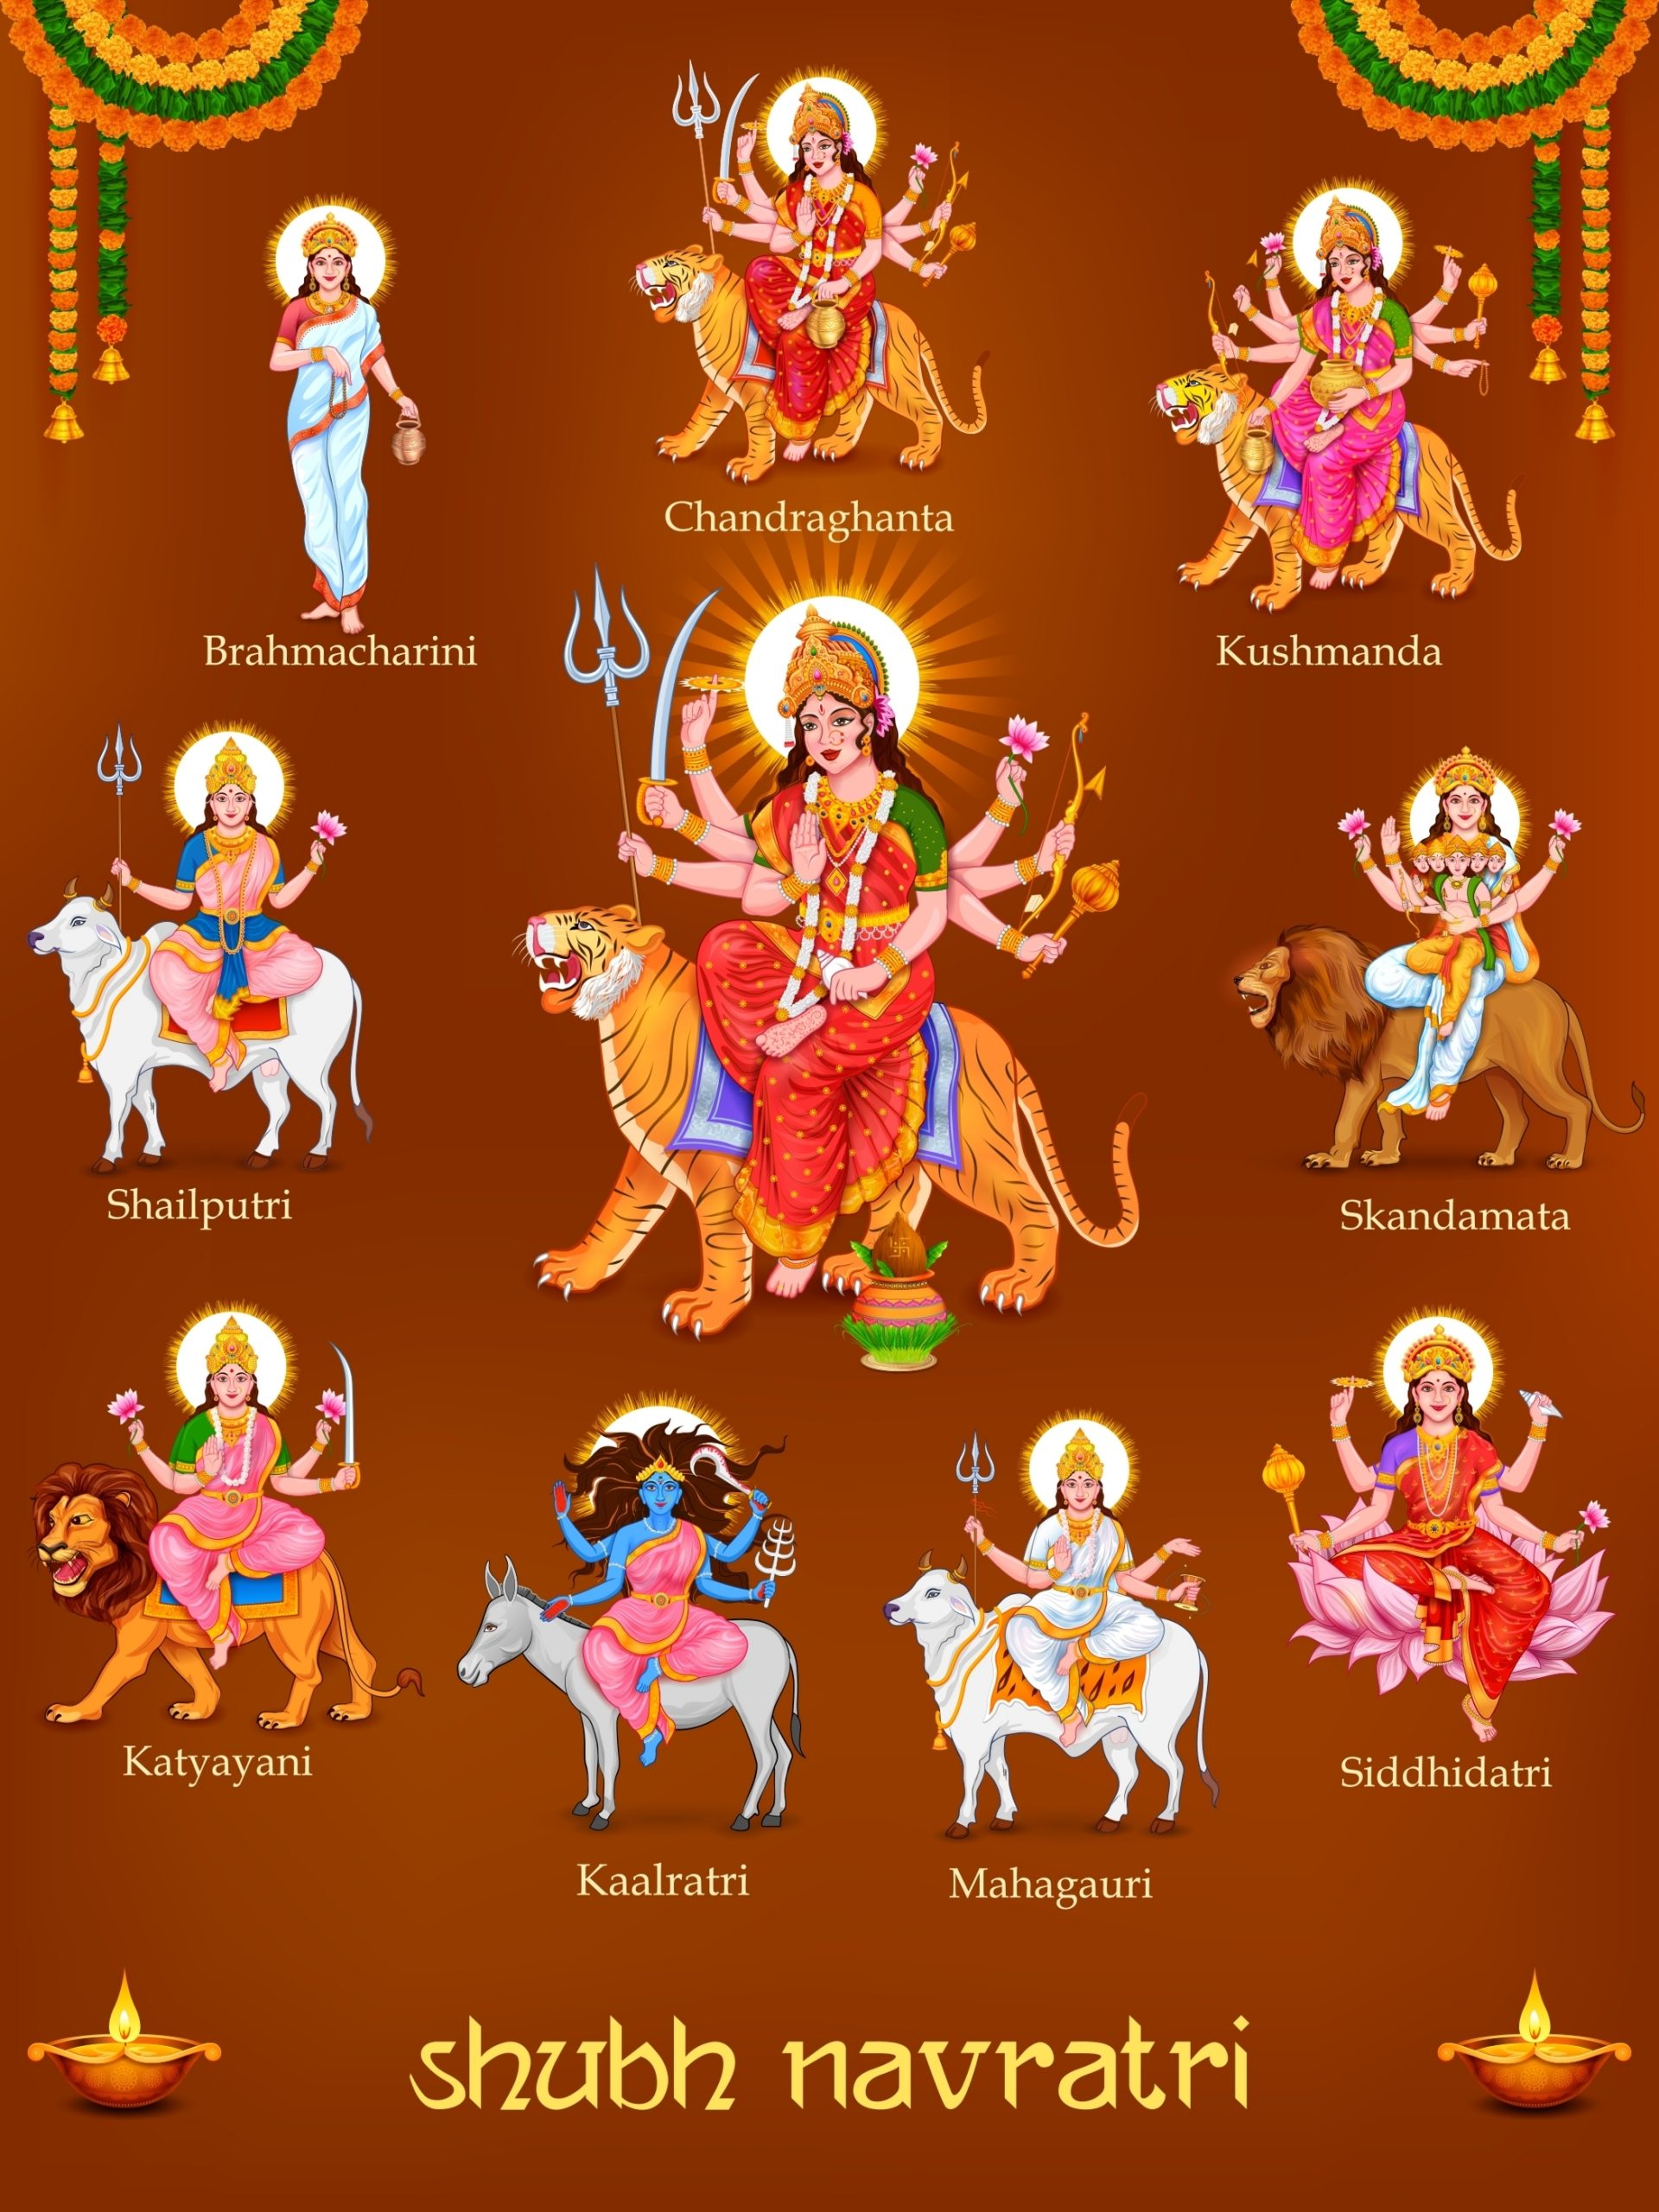 नवरात्रि के दिनों में खुशियों का त्योहार: जानिए इस शानदार महोत्सव के बारे में post thumbnail image